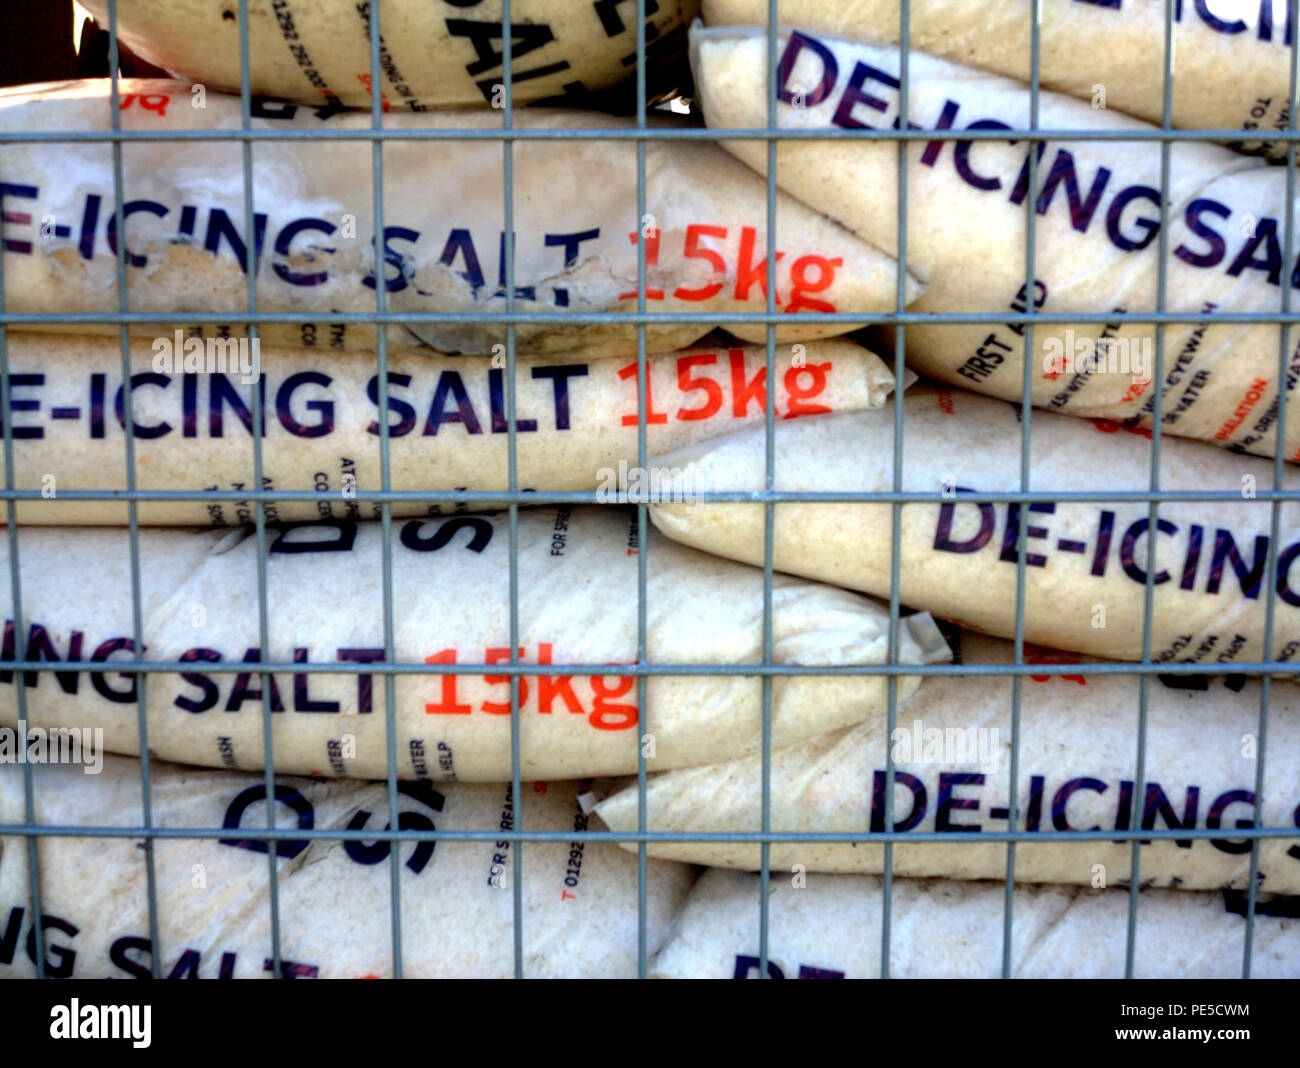 de-icing rock salt 15 kilogram bags in cage Stock Photo